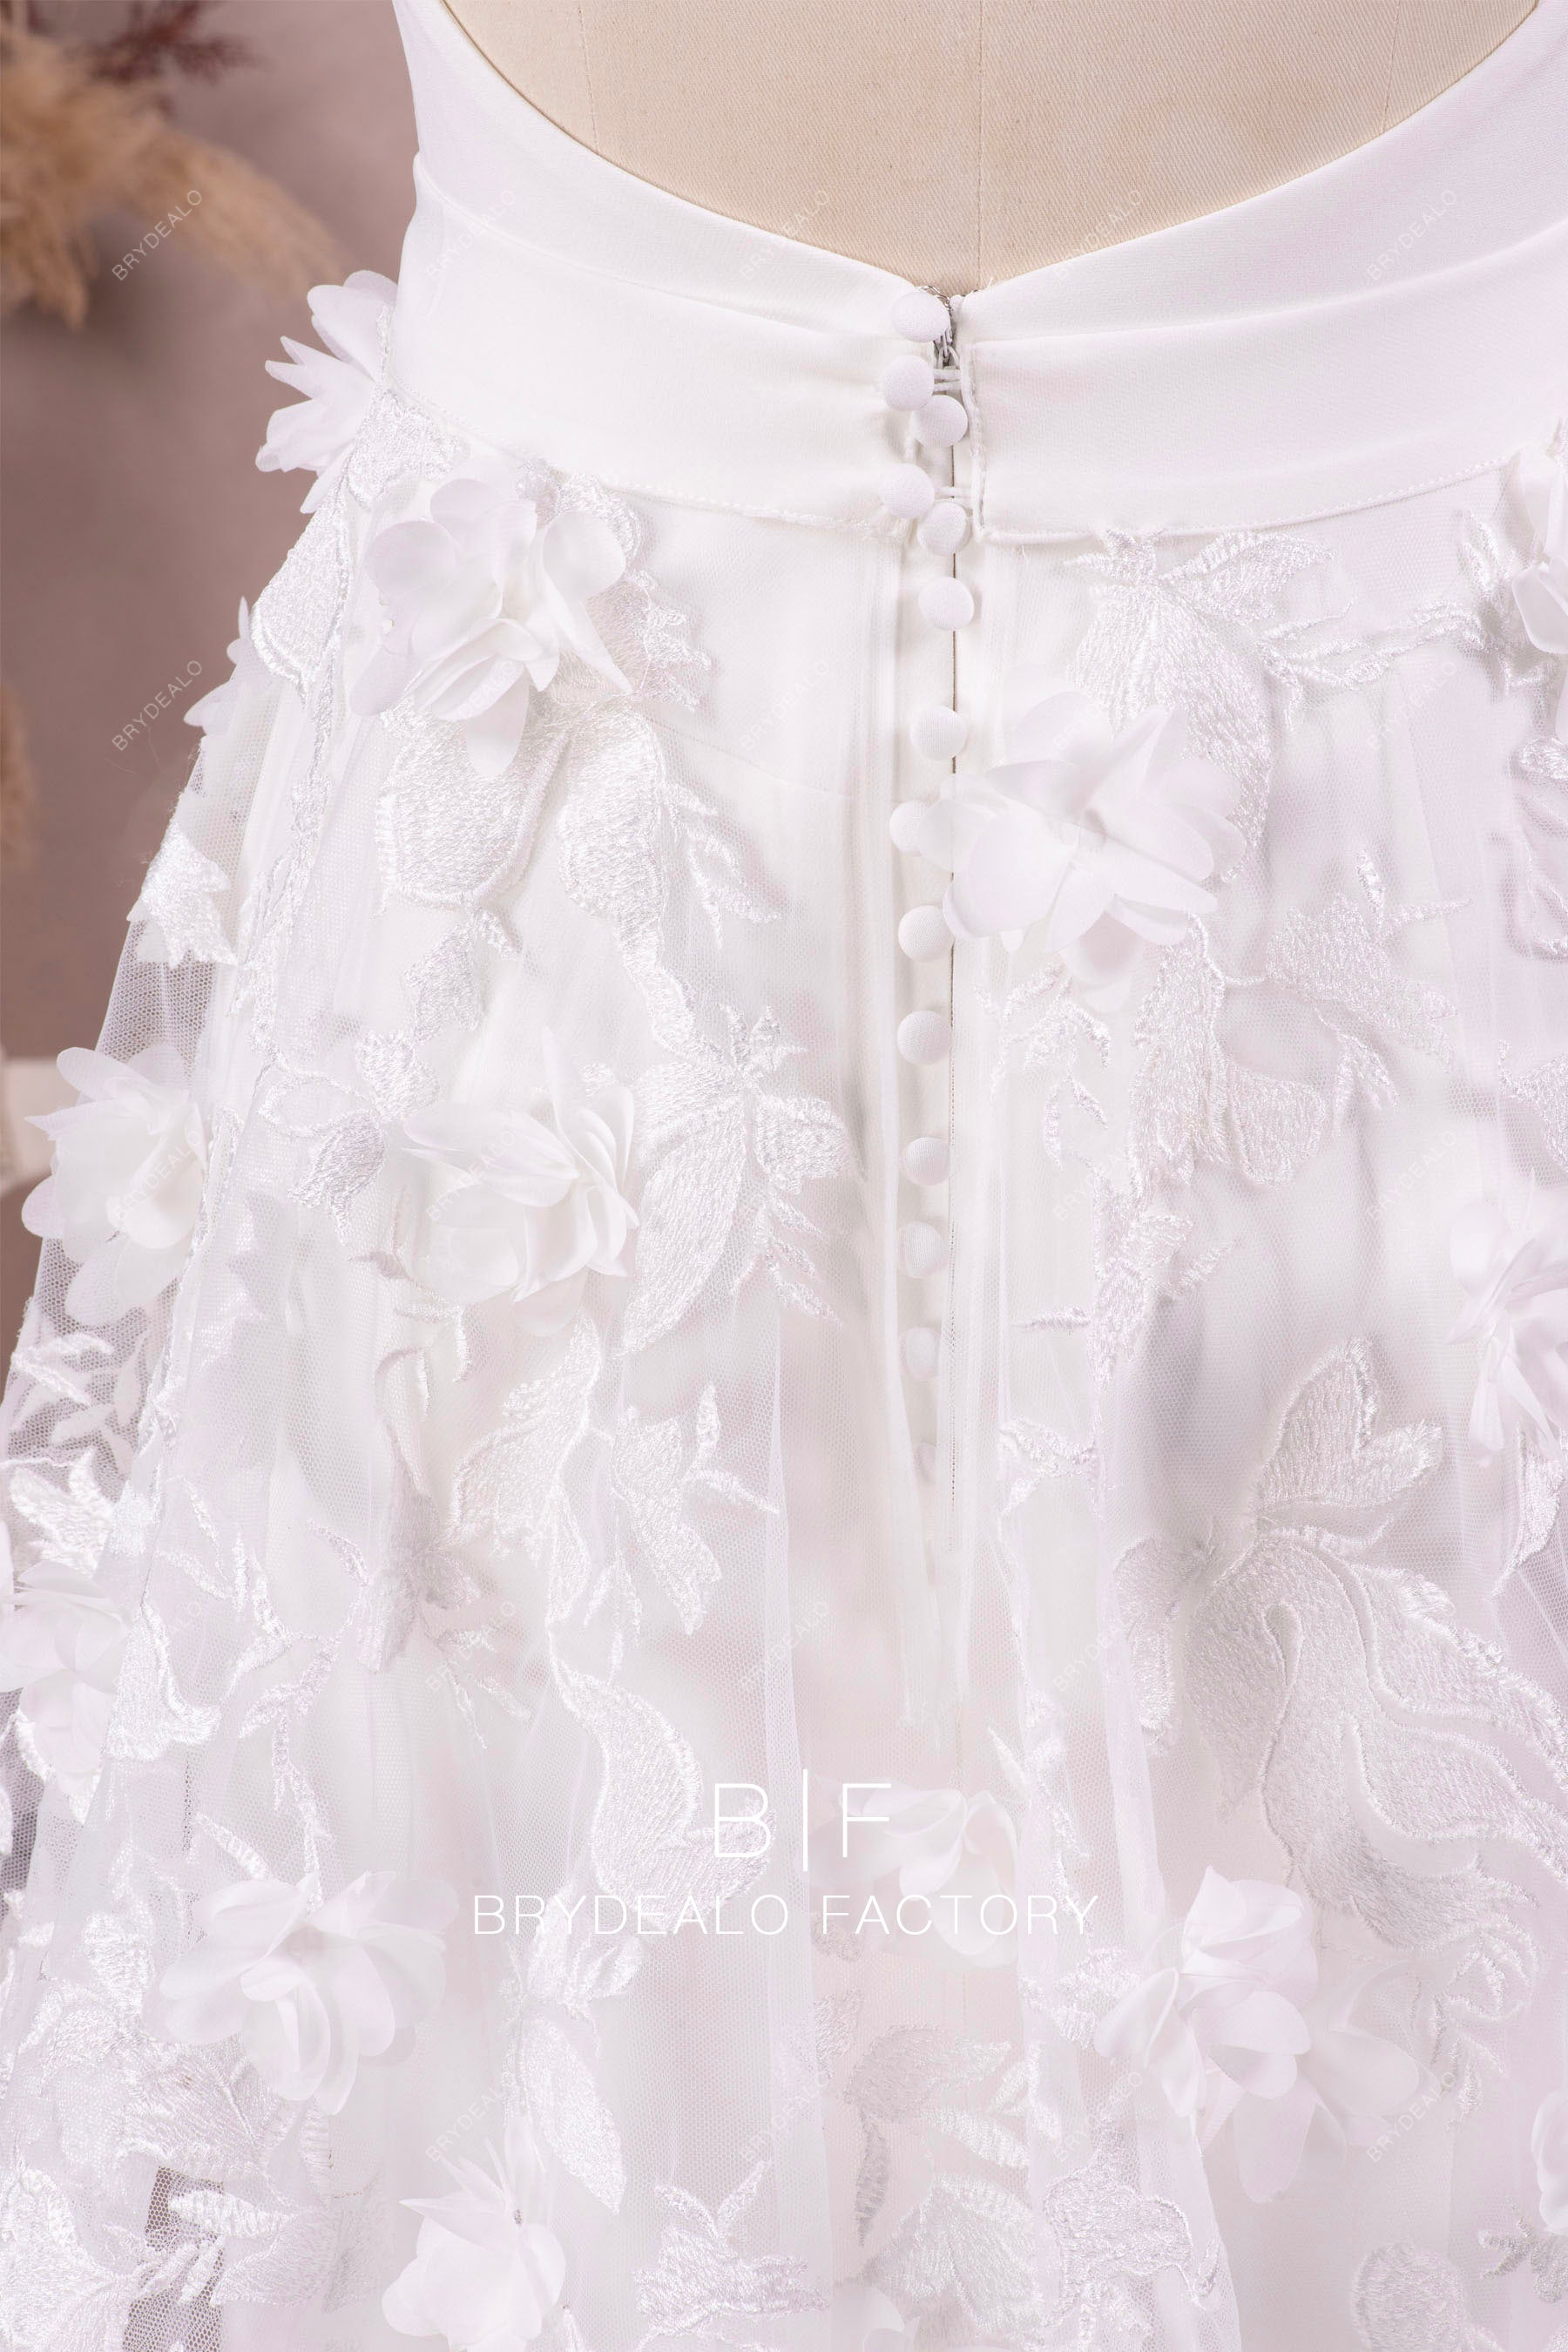 3D flower lace overskirt wedding dress